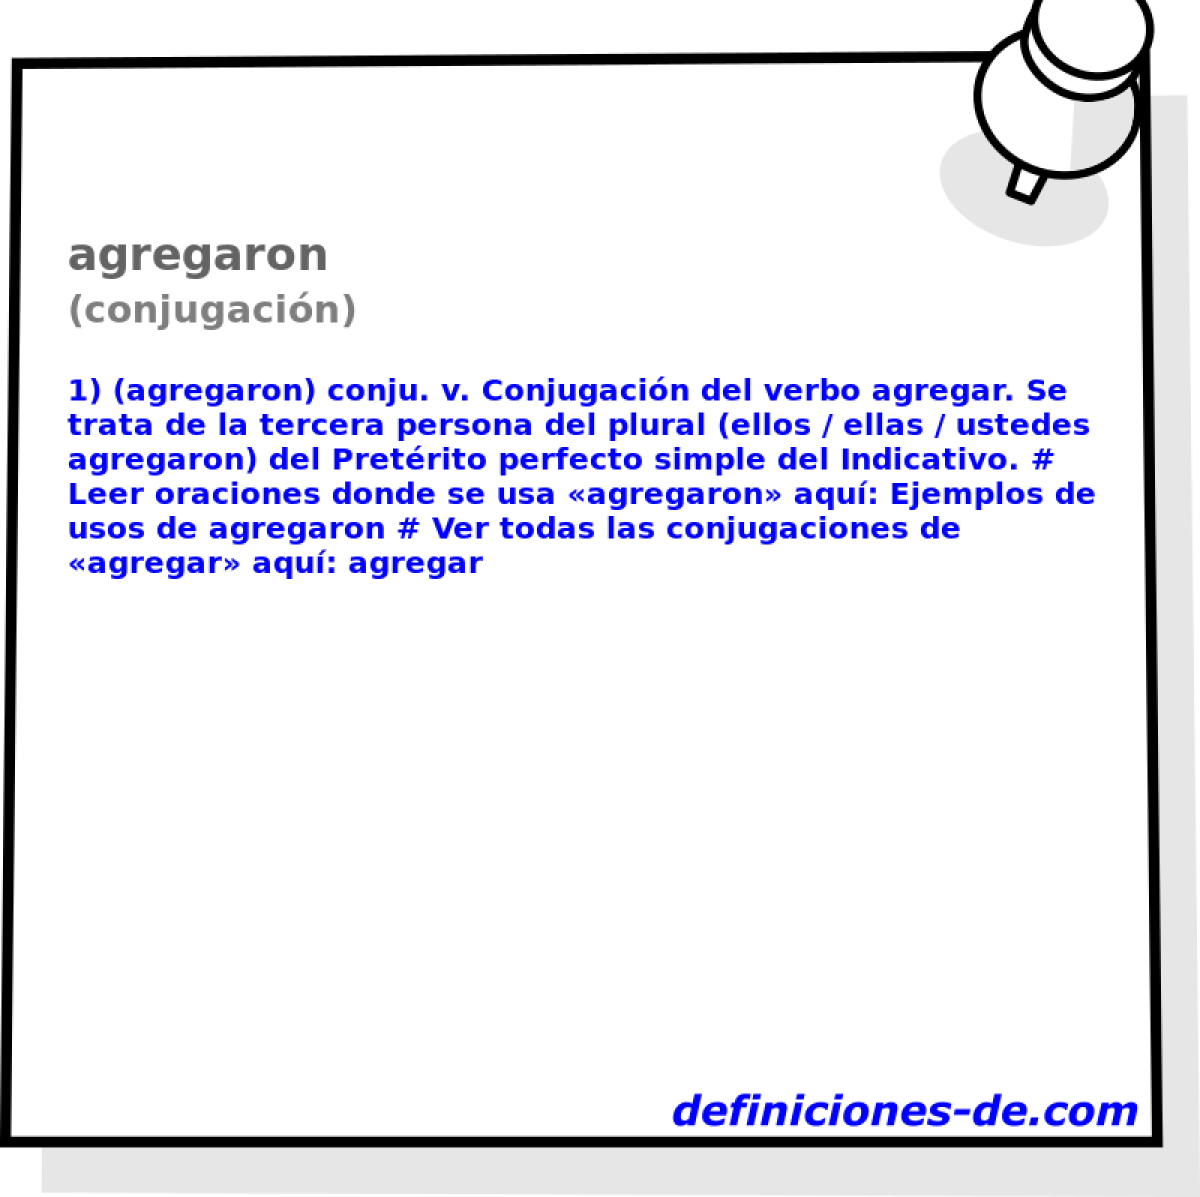 agregaron (conjugacin)